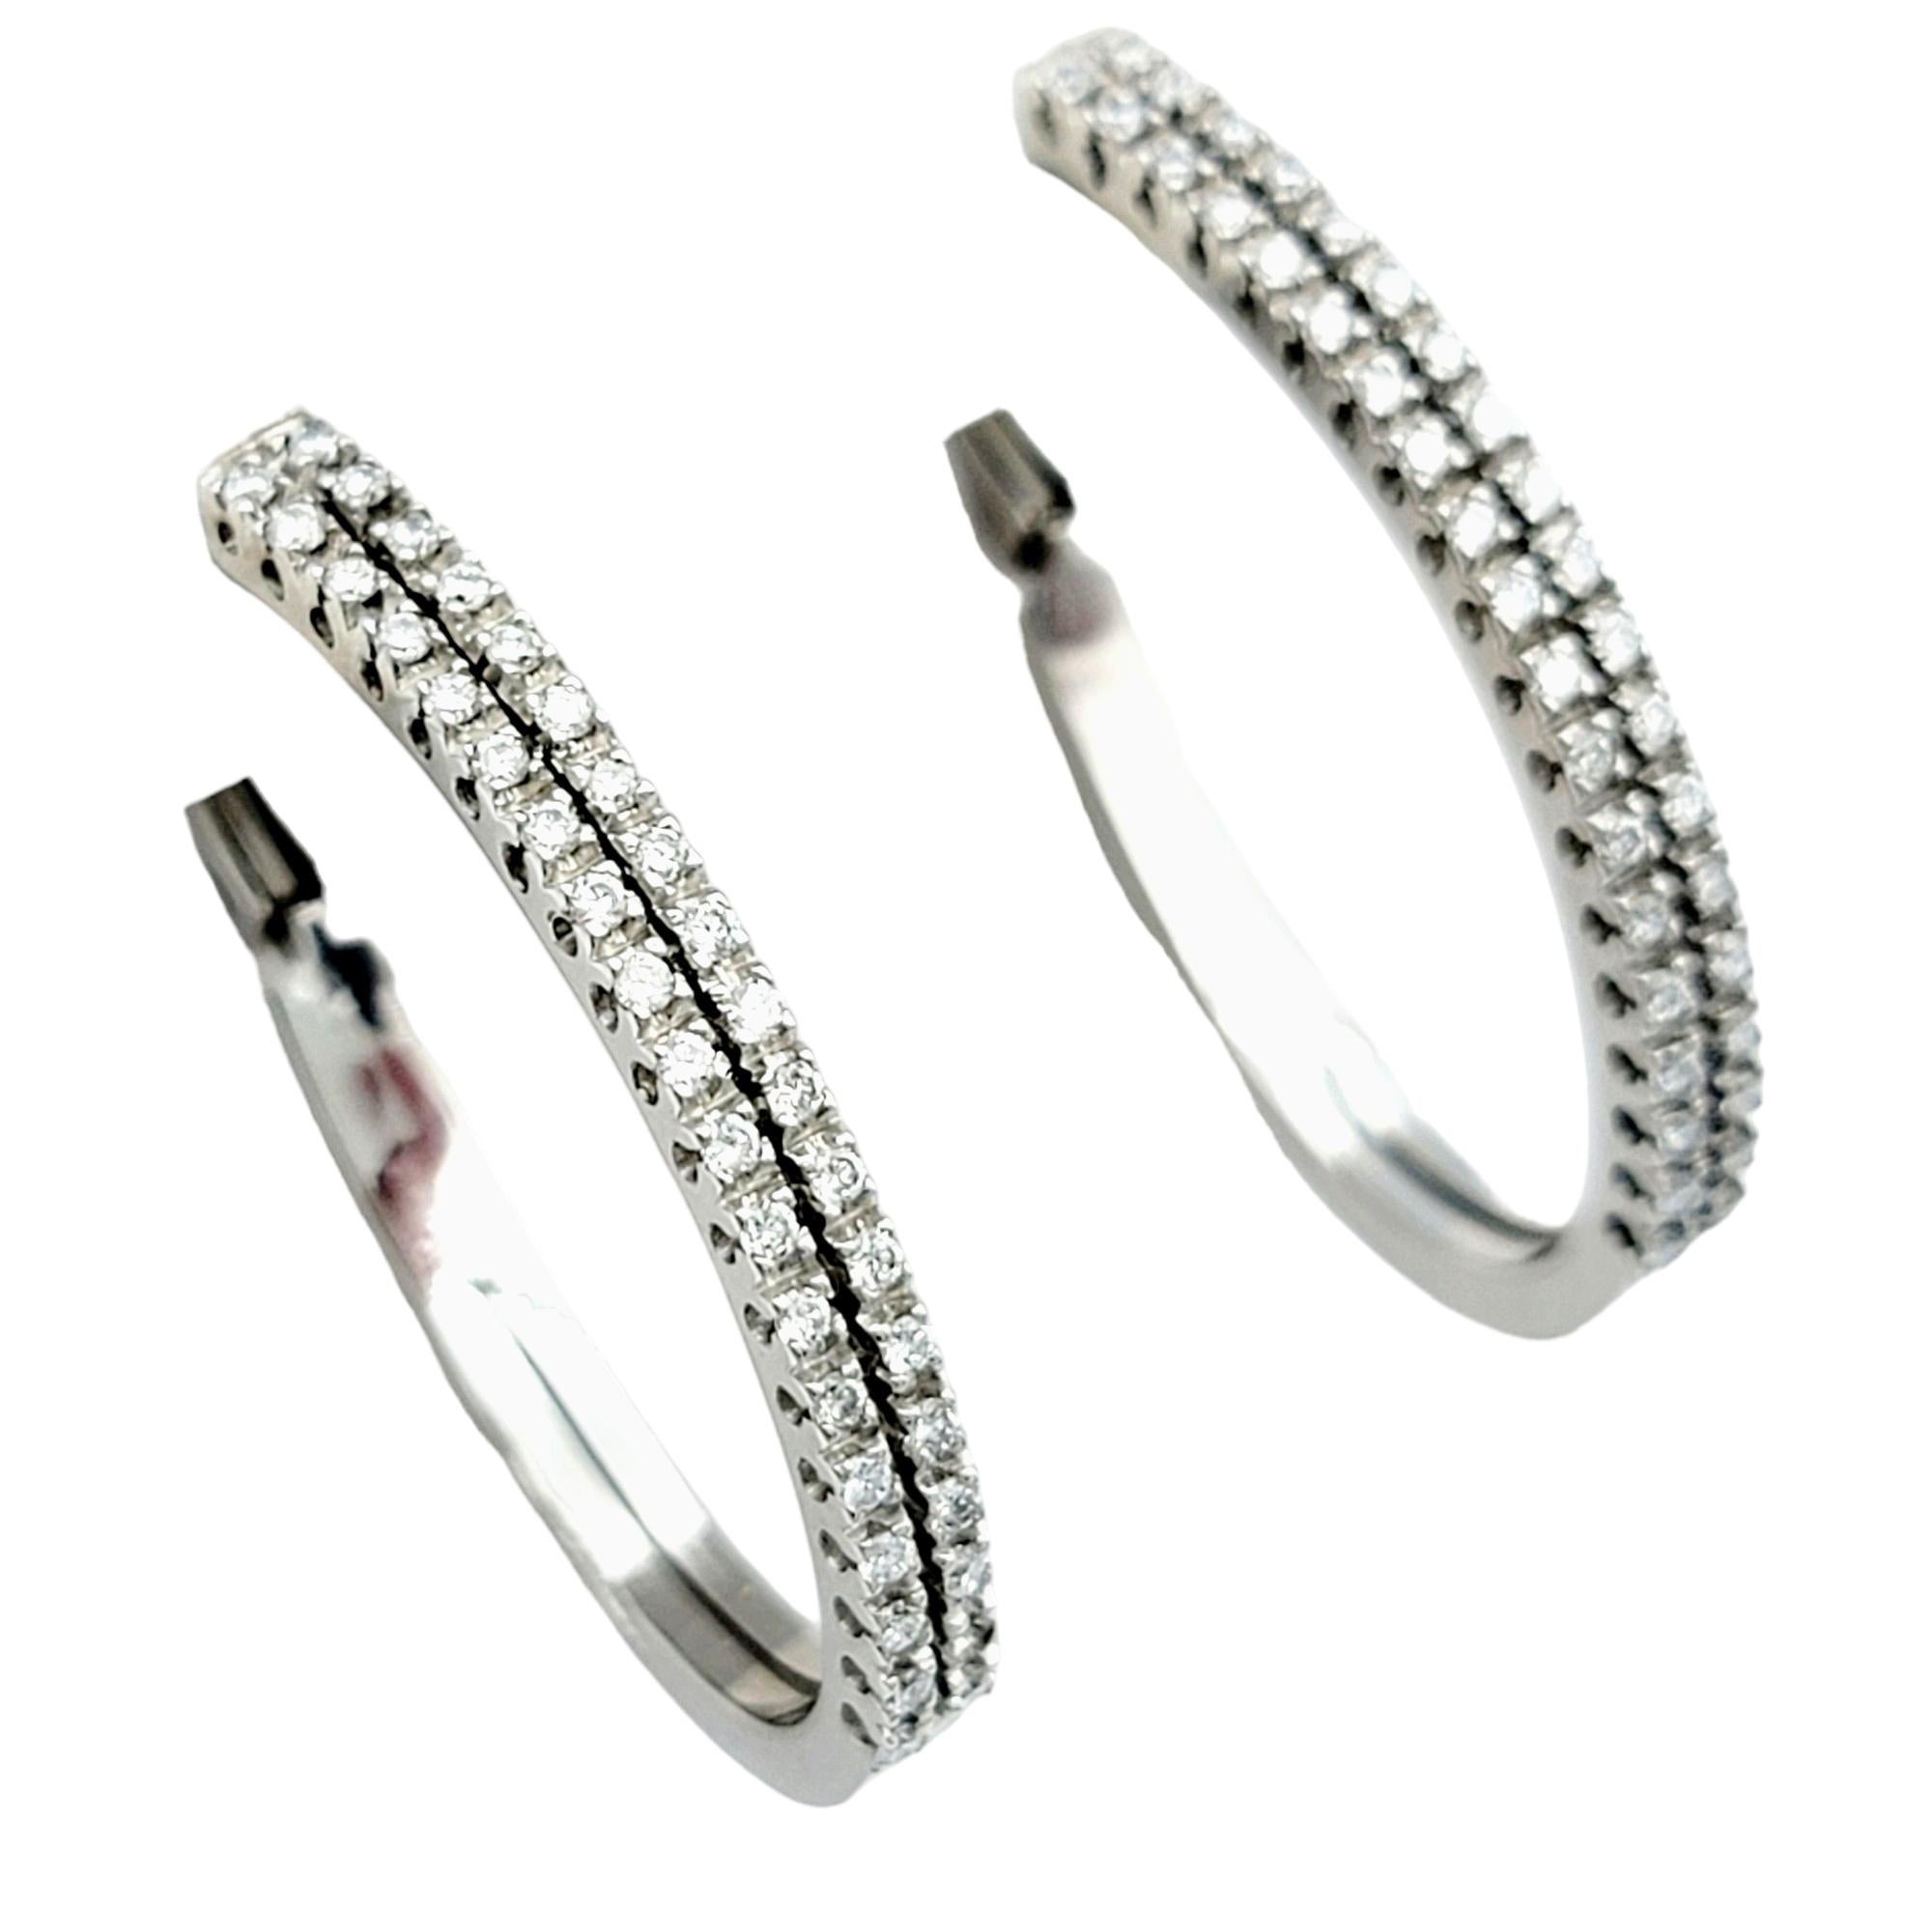 Diese atemberaubenden Raima Diamantohrringe strahlen zeitlose Eleganz und Raffinesse aus. Die mit viel Liebe zum Detail gefertigten Ohrringe sind mit zwei Säulen aus runden Diamanten besetzt, die die Vorderseite der Reifen zieren und bei jeder